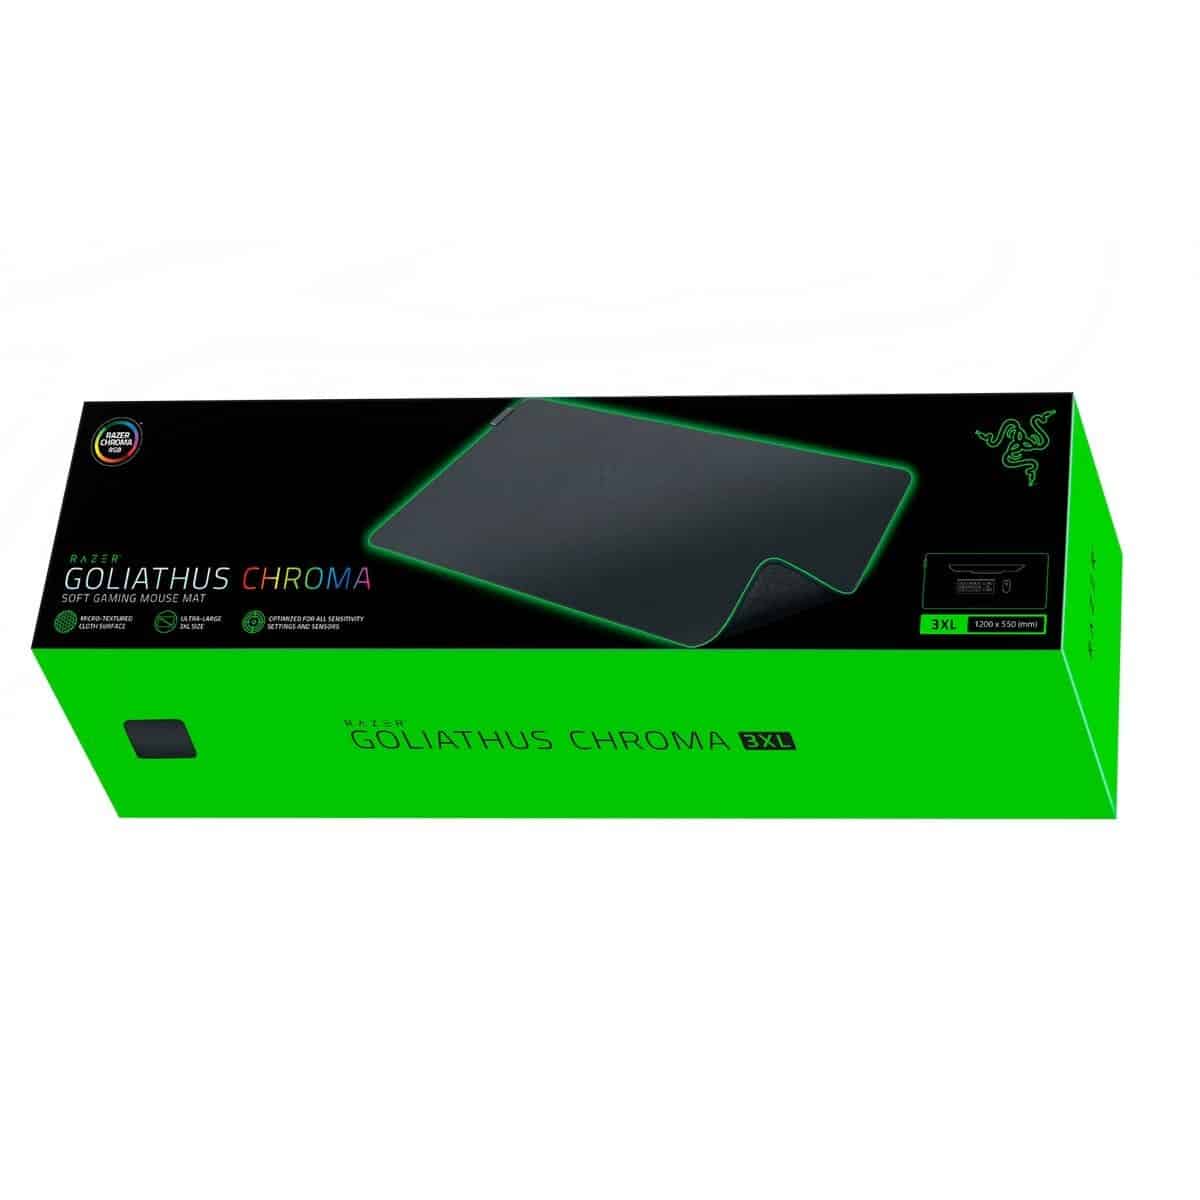 Razer Goliathus Chroma 3XL Gaming Mouse Mat - 1200 x 550 x 3.5 mm